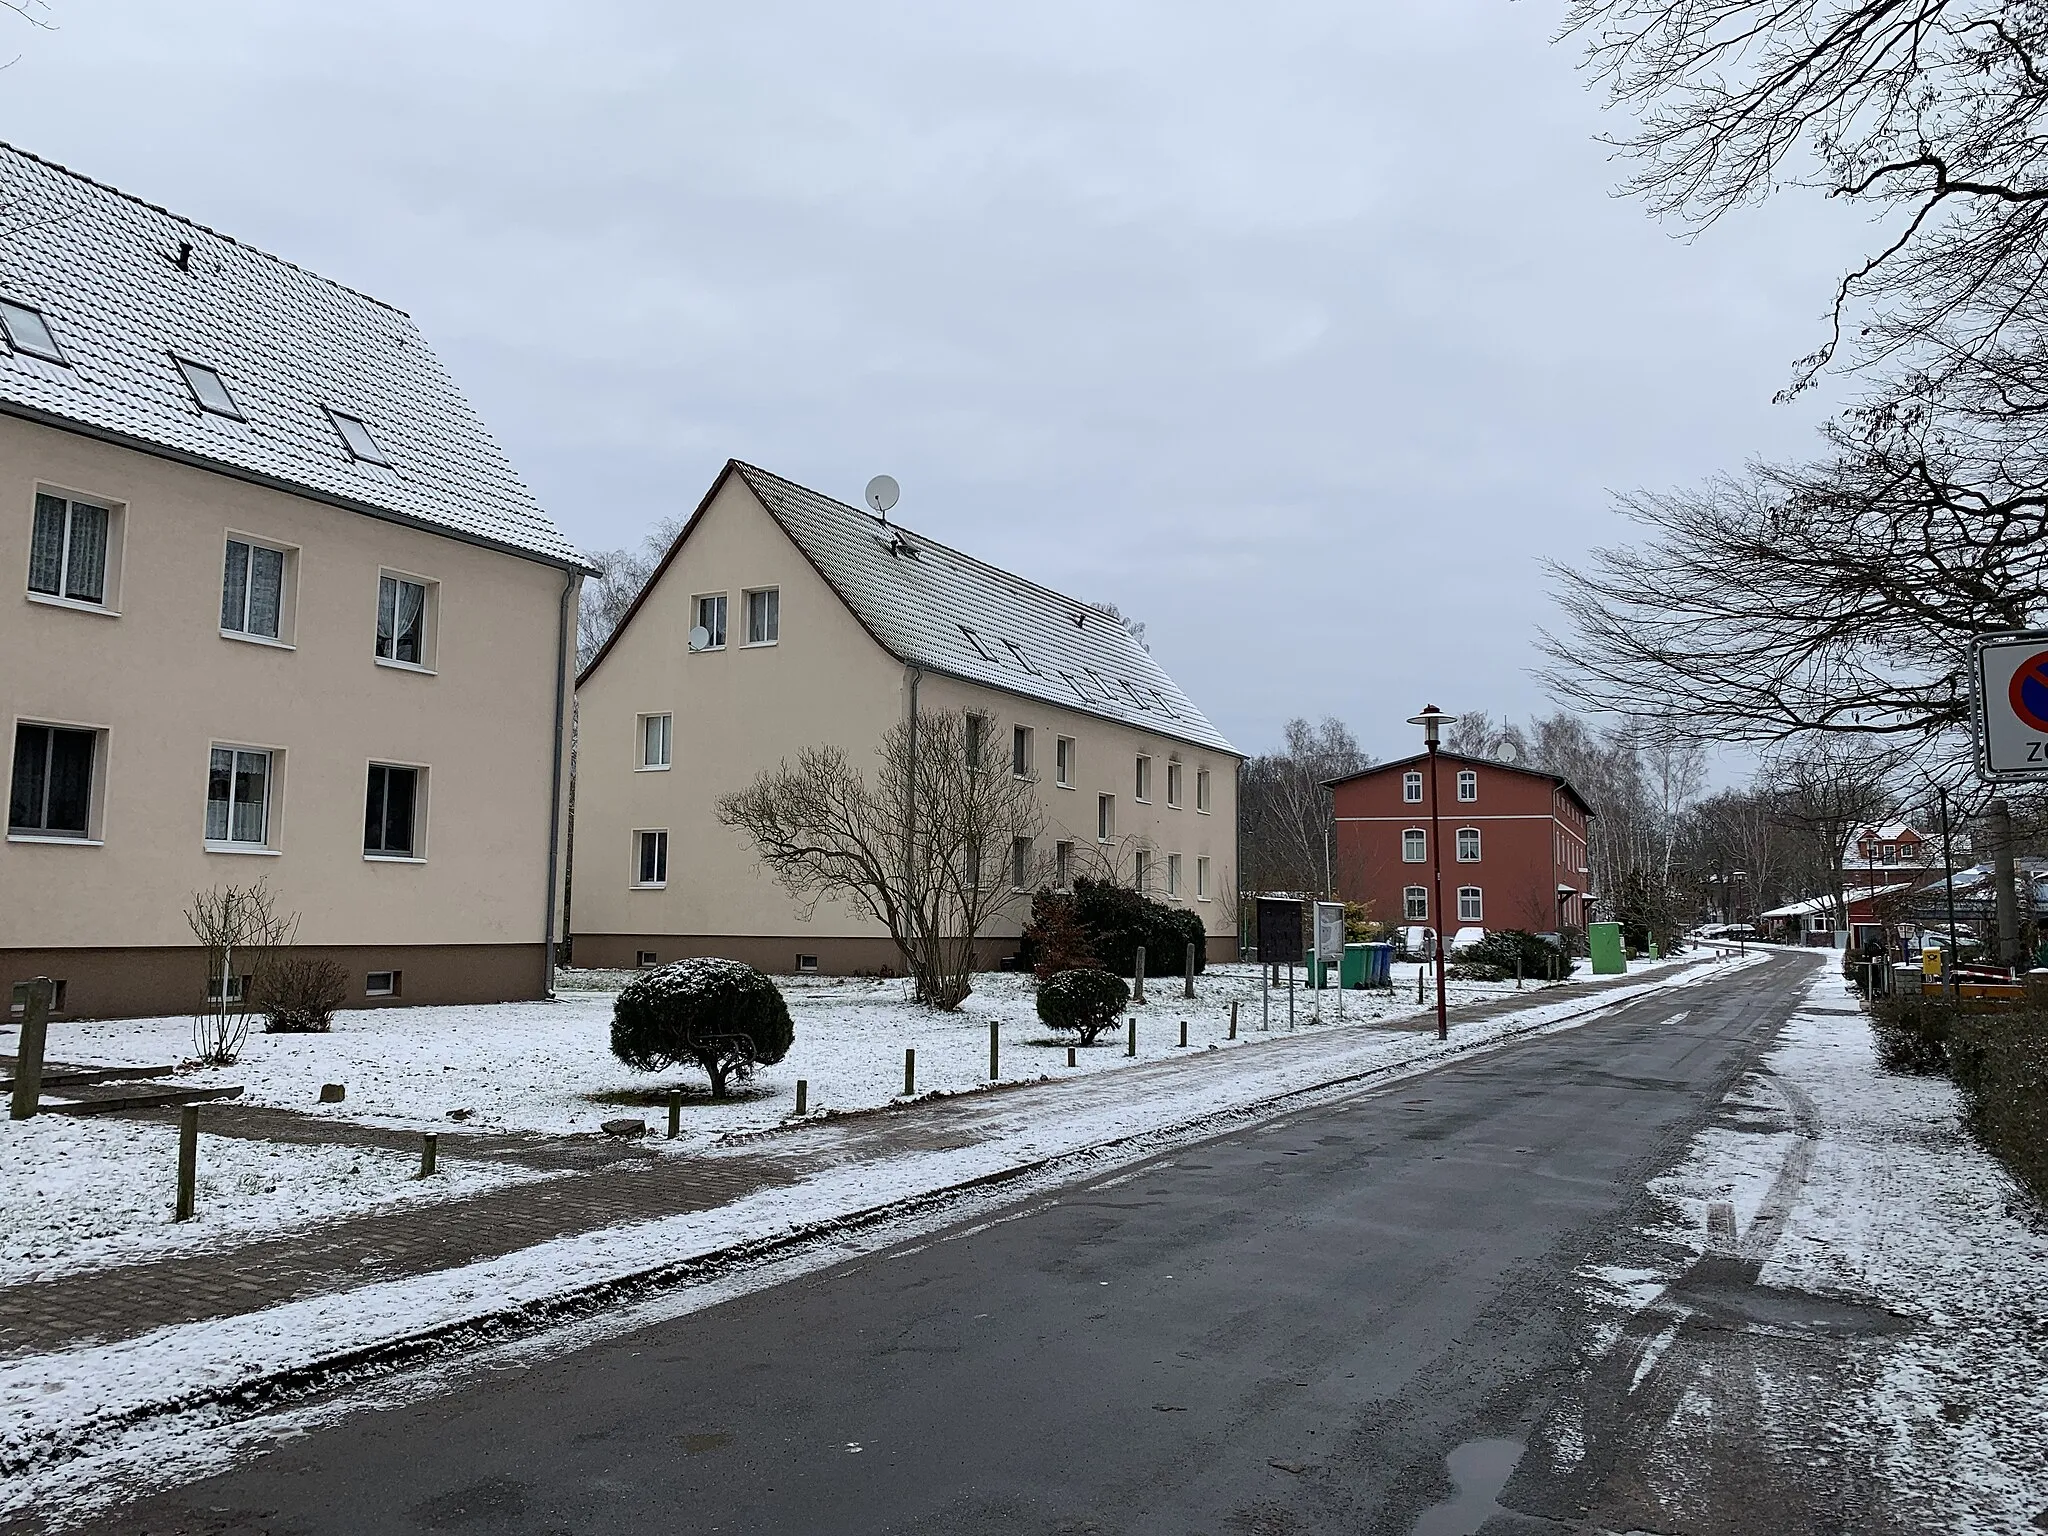 Photo showing: Birkholz, ein Wohnplatz von Großbeeren in Brandenburg